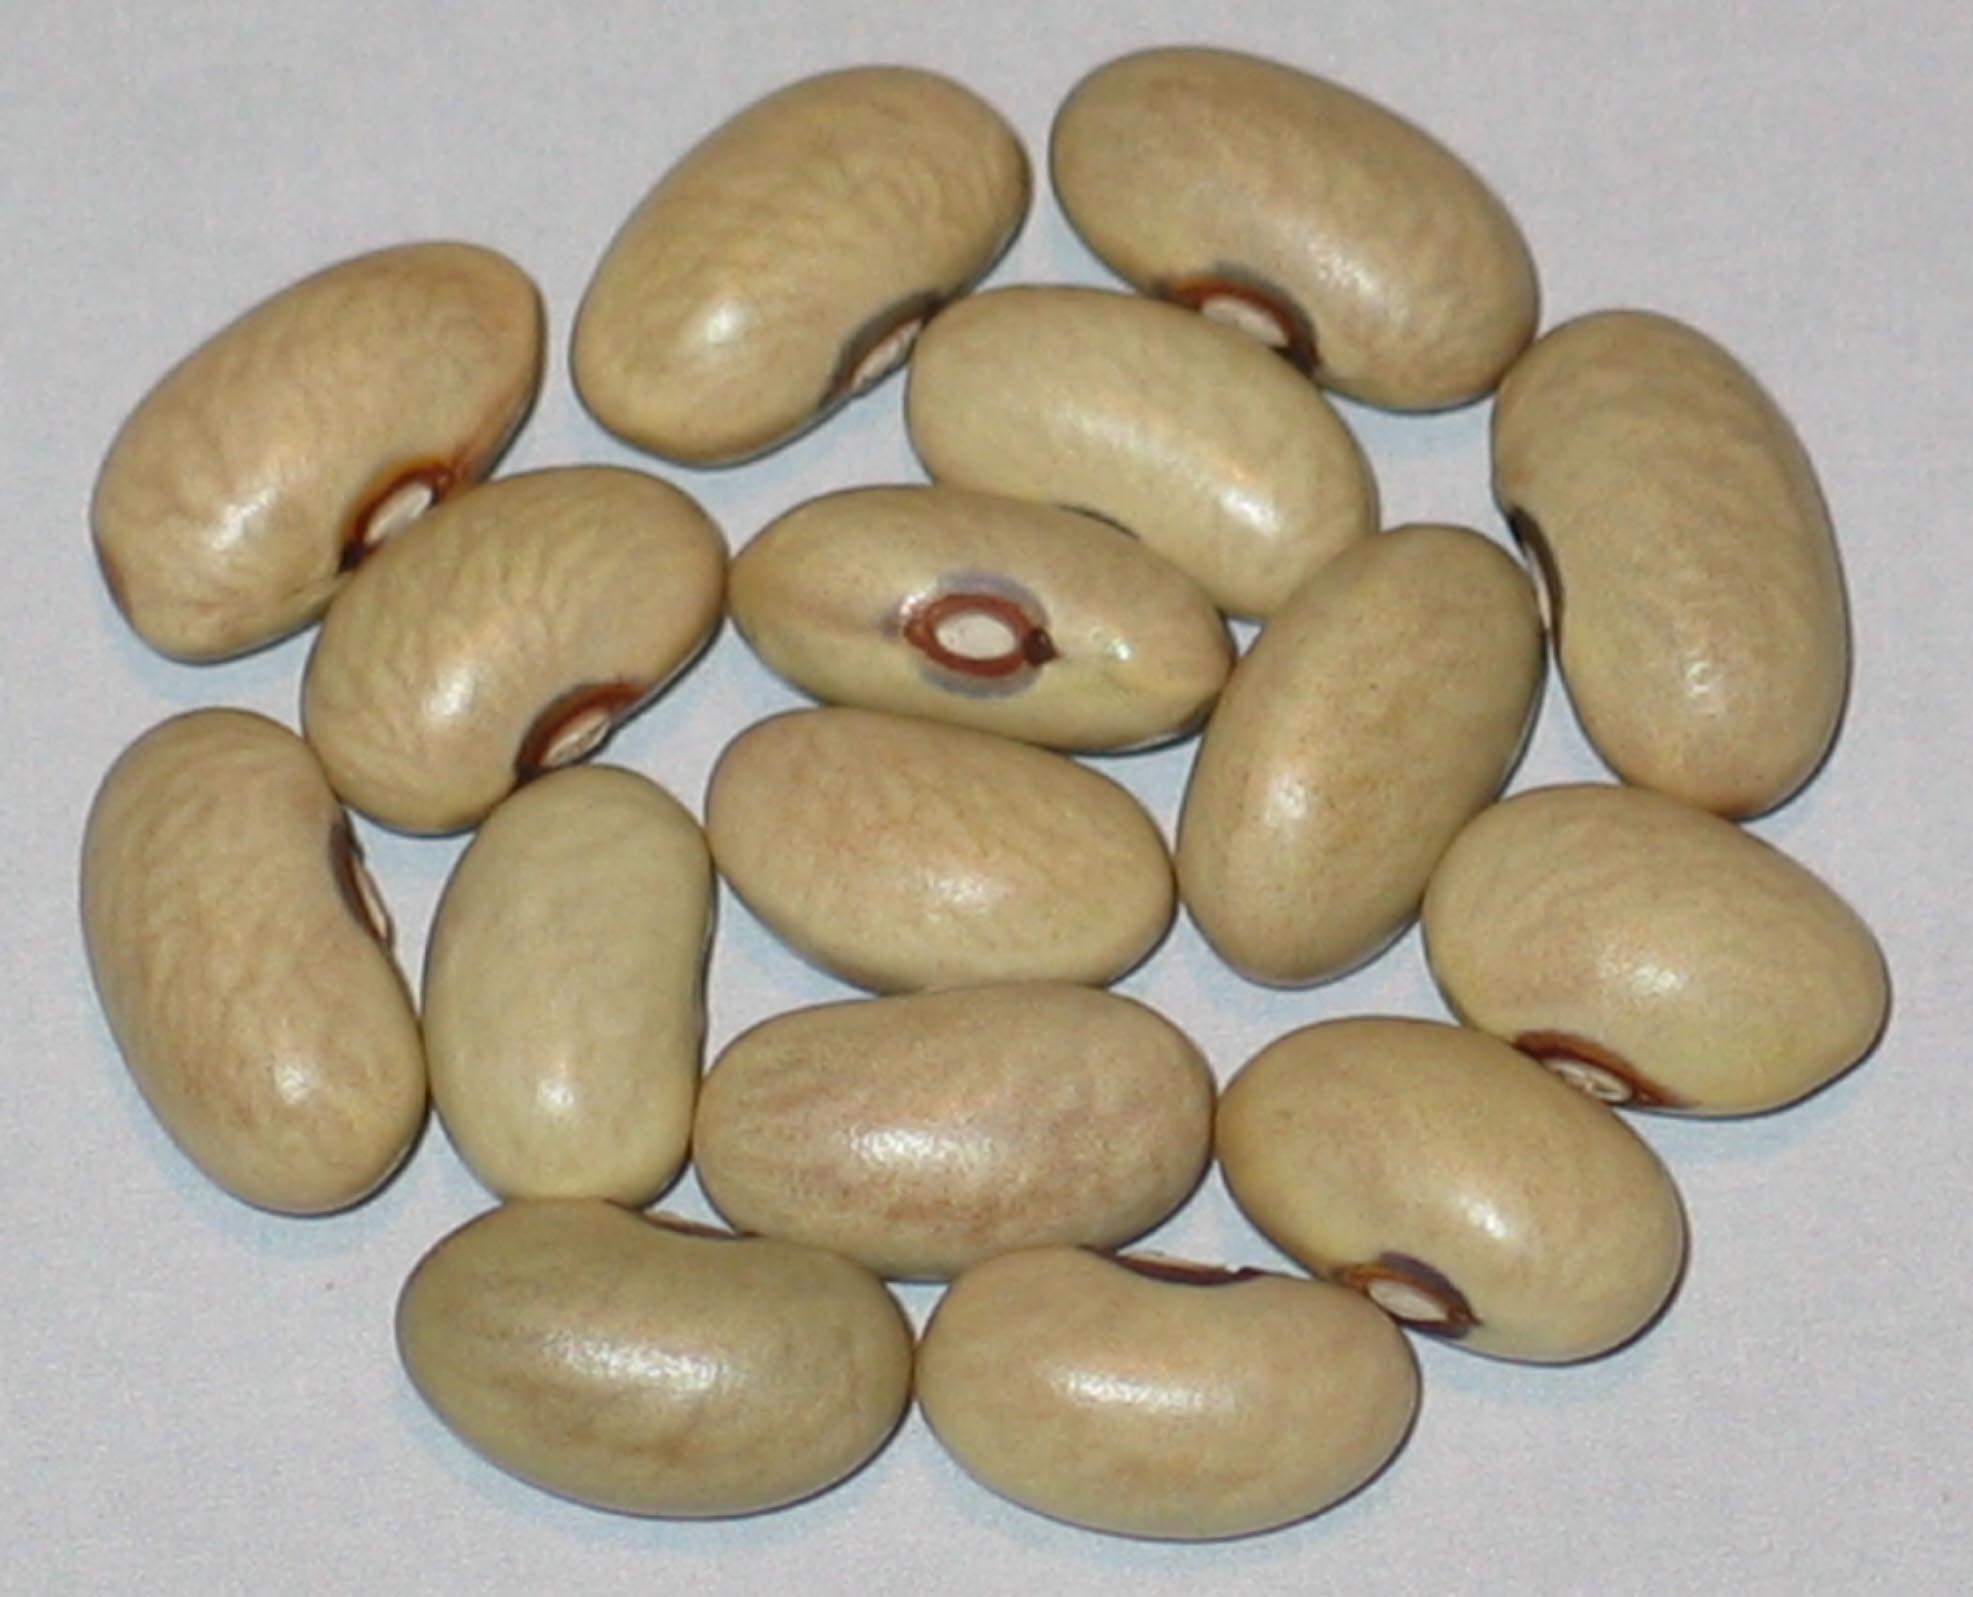 image of Slavonski Zeleni beans